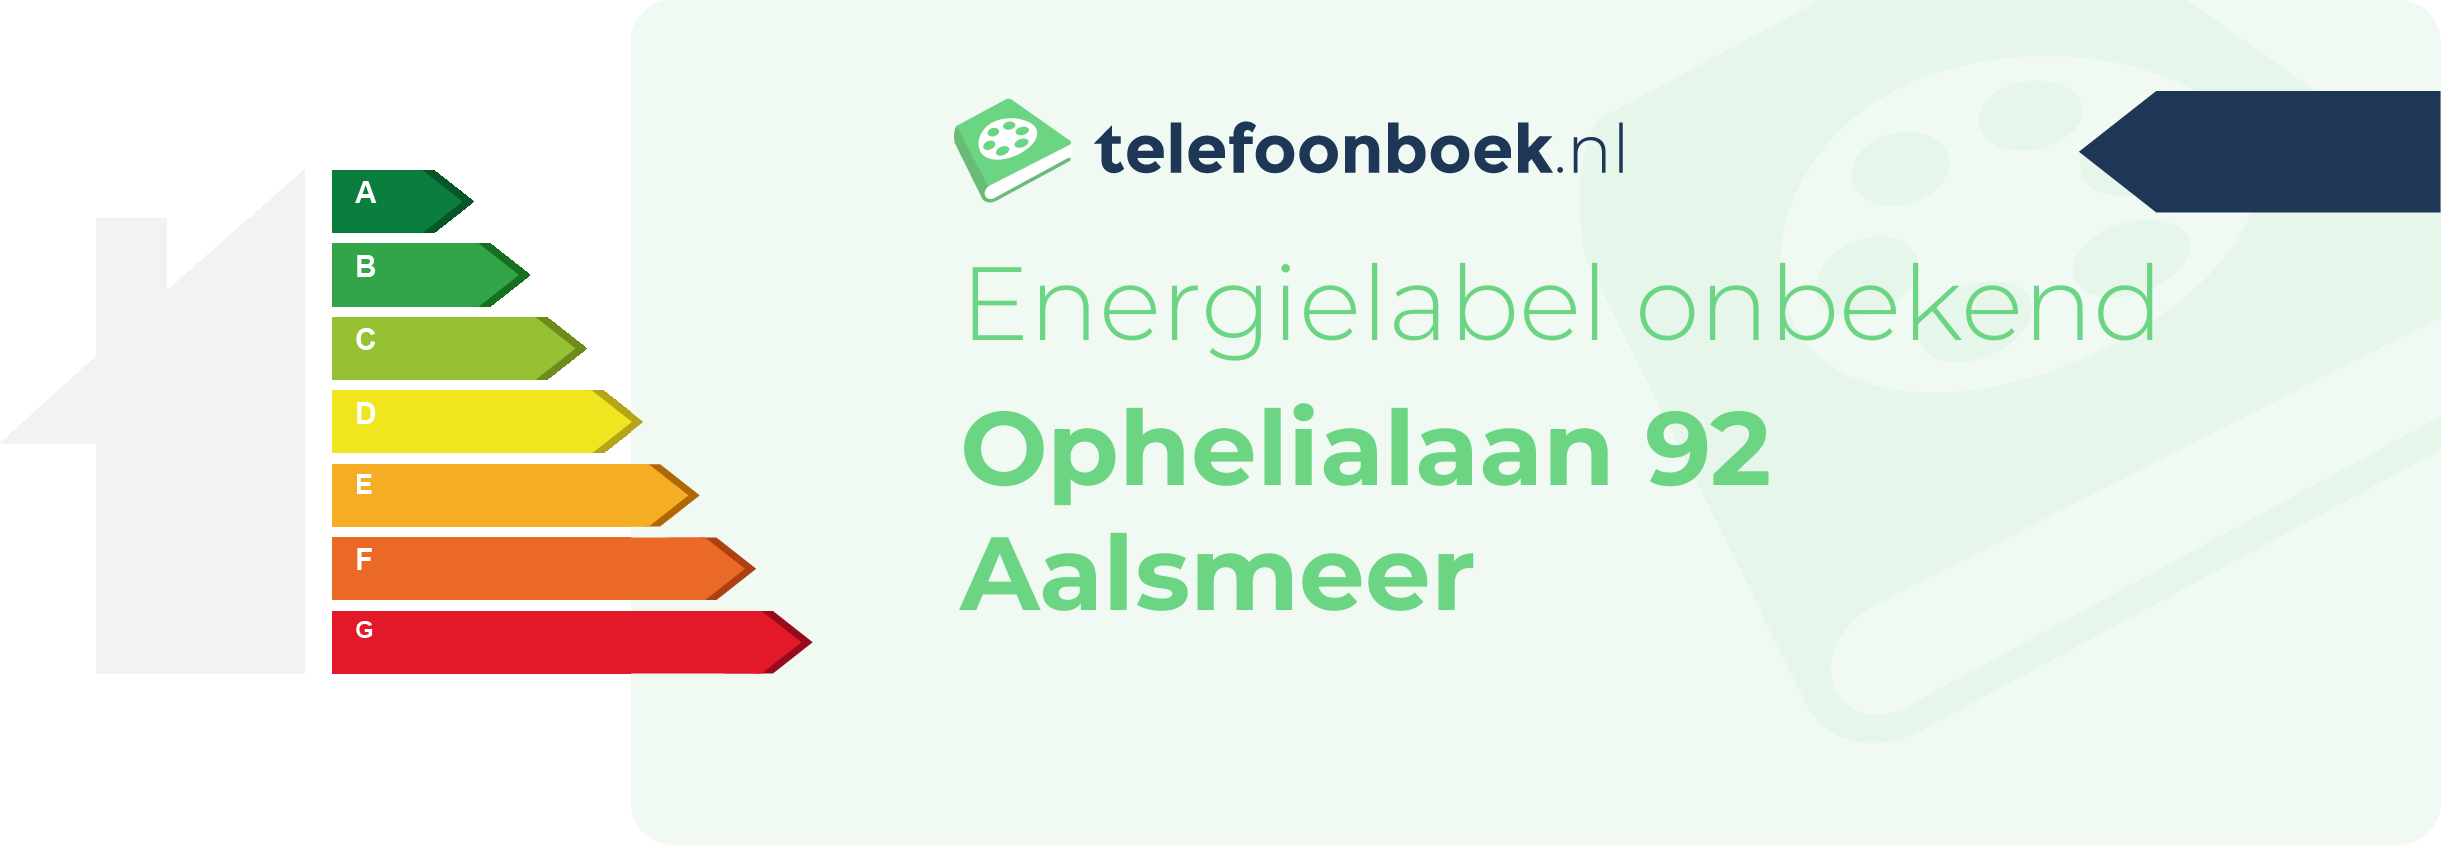 Energielabel Ophelialaan 92 Aalsmeer